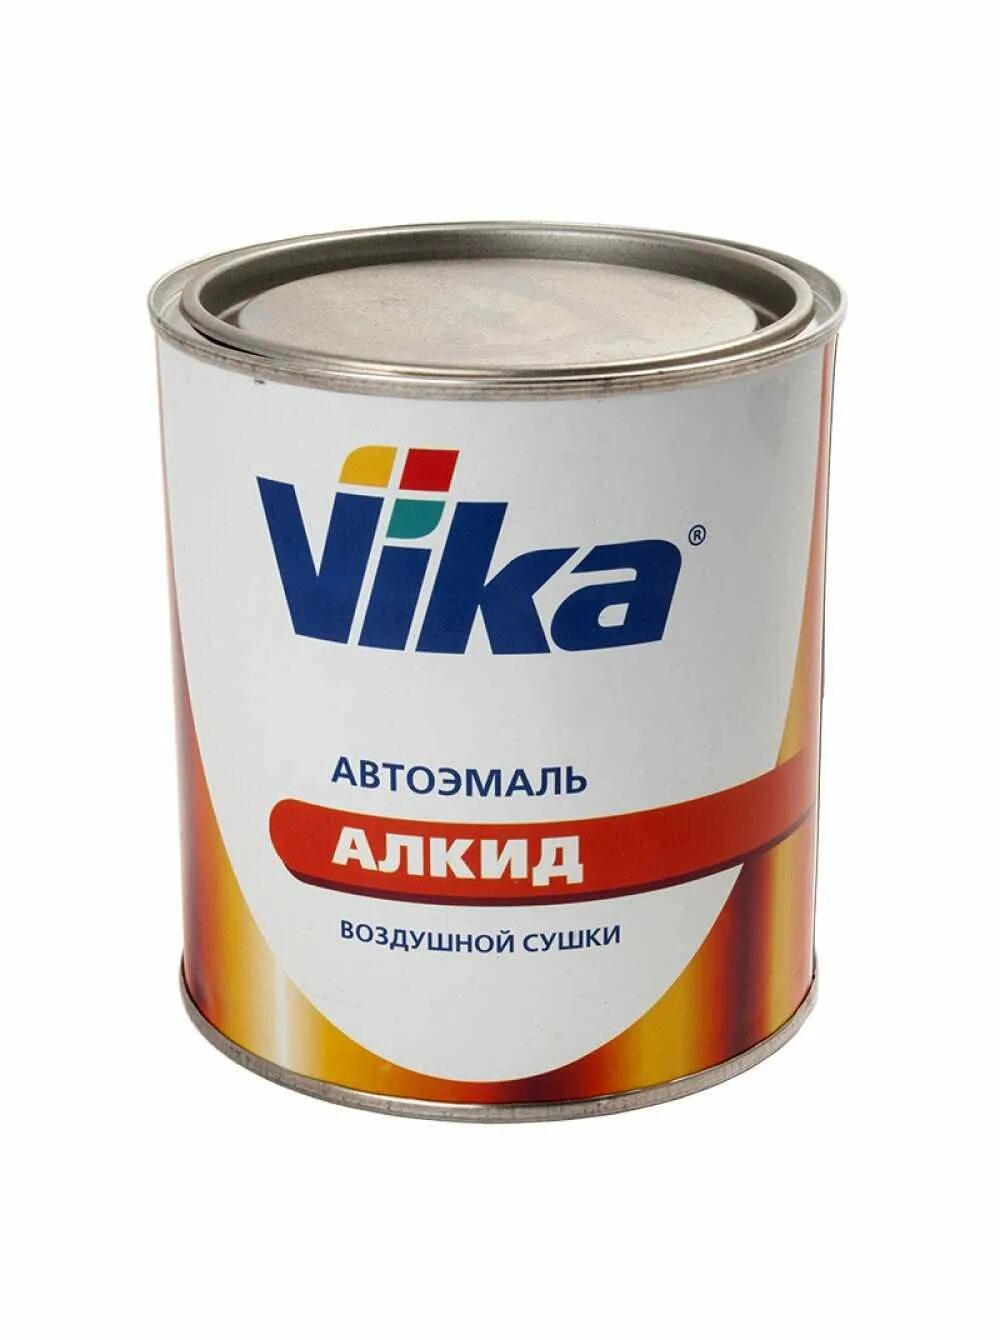 Автоэмаль "Vika Вика-60" красная 42, 0,8 кг. Vika автоэмаль мл-1110. Автоэмаль Vika 1035. Vika автоэмаль мл-12 белая ночь.